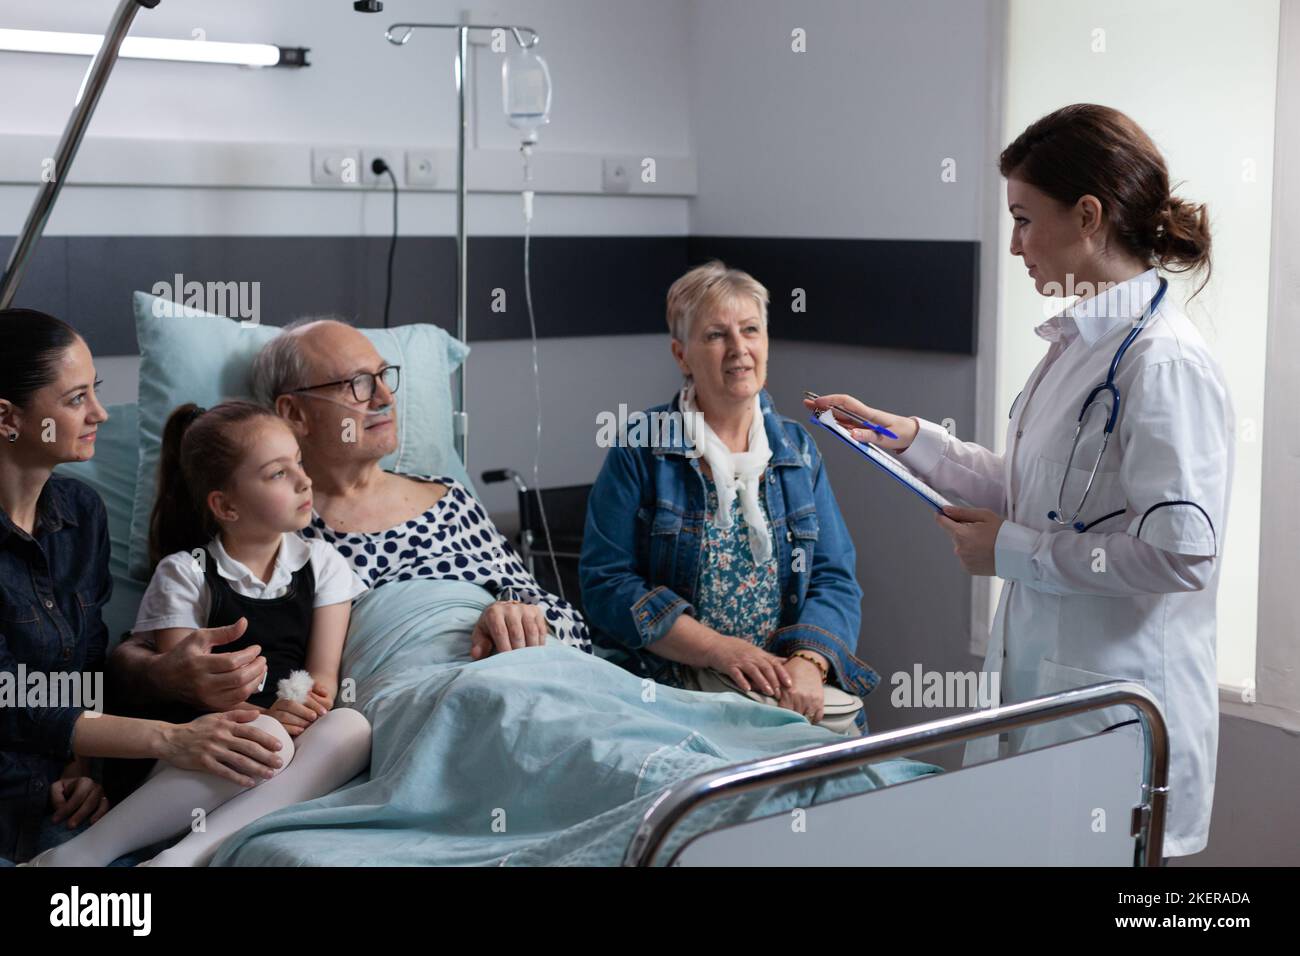 Médecin gériatrique effectuant un examen médical de routine de patient âgé hospitalisé. Femme généraliste déclarant l'état de santé du grand-père à la famille dans la chambre d'hôpital. Banque D'Images